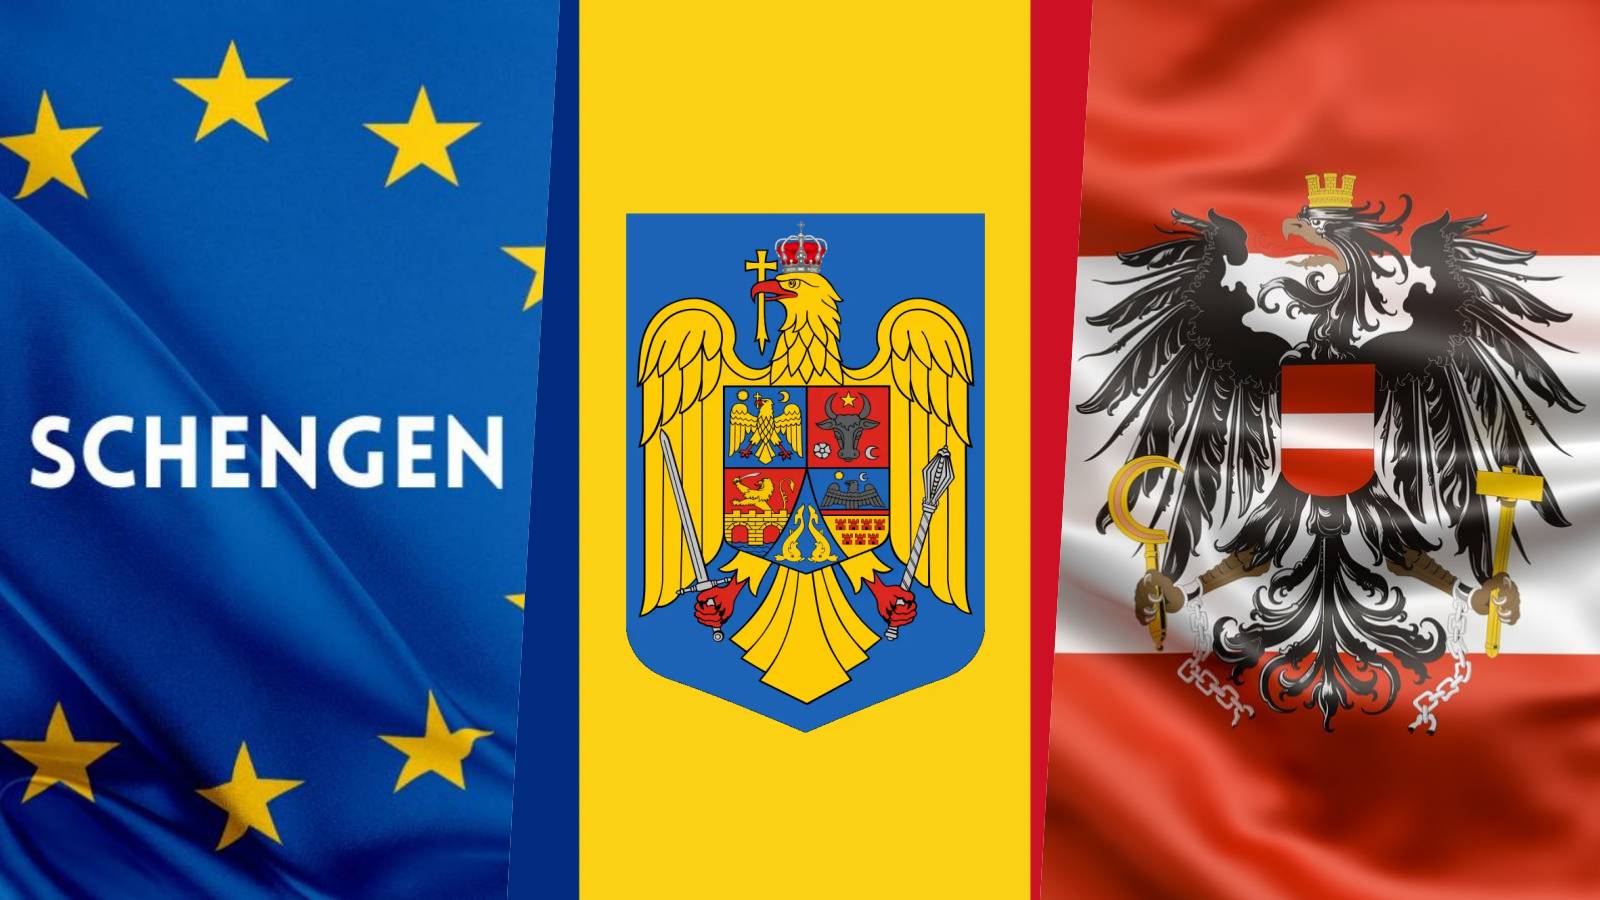 Østrig Karl Nehammer annoncerer officielle beslutninger i sidste øjeblik mod Rumæniens Schengen-tiltrædelse